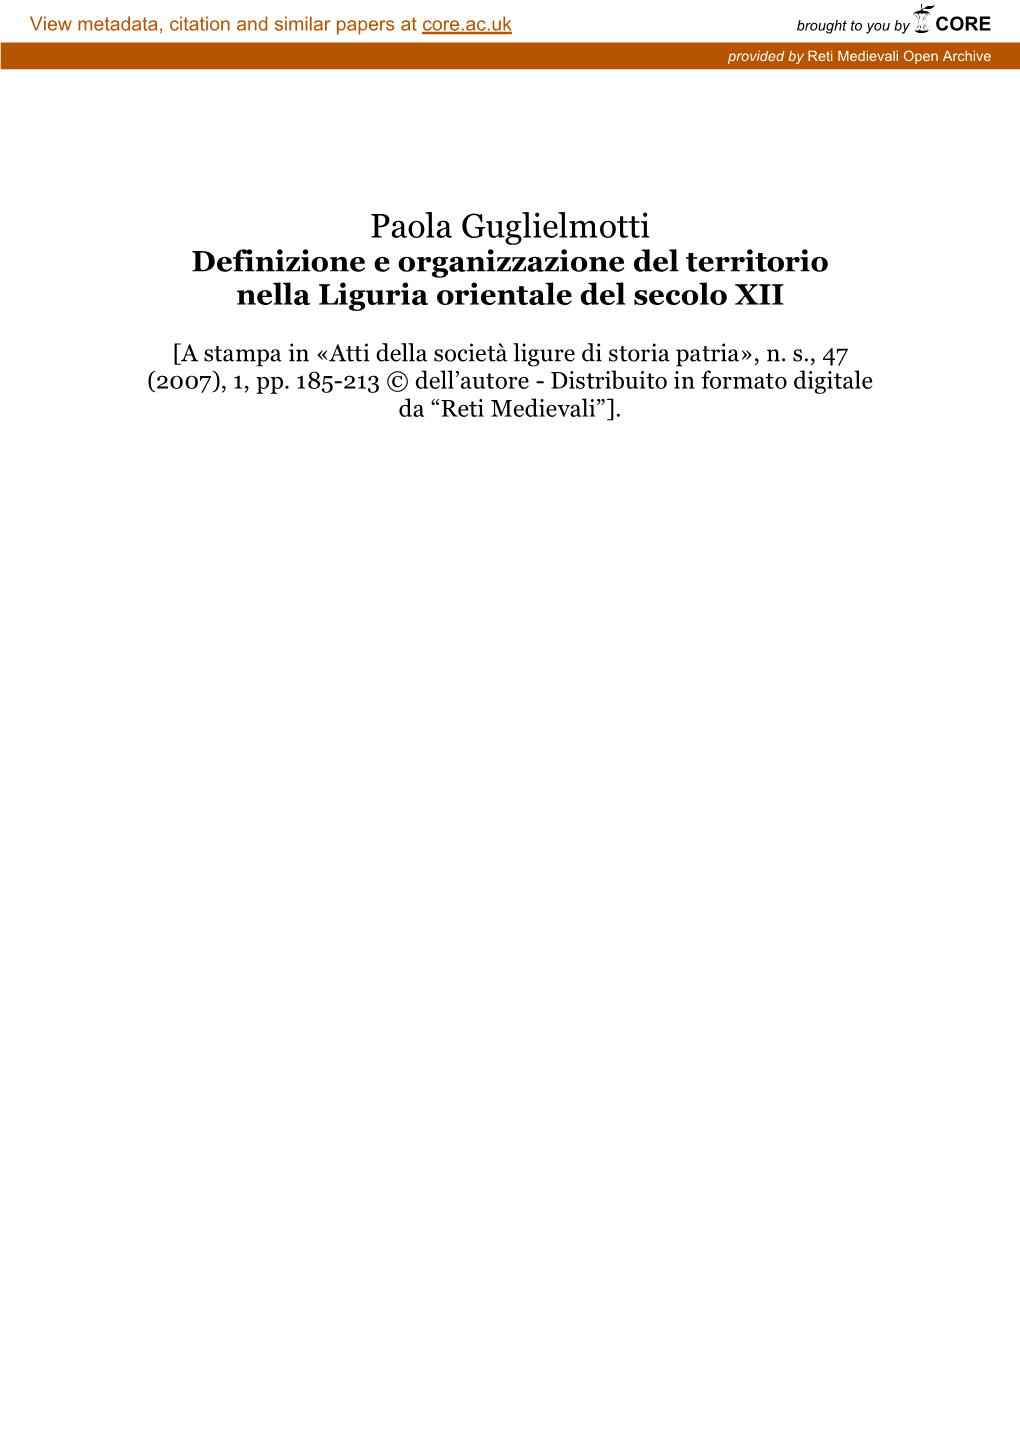 Paola Guglielmotti Definizione E Organizzazione Del Territorio Nella Liguria Orientale Del Secolo XII